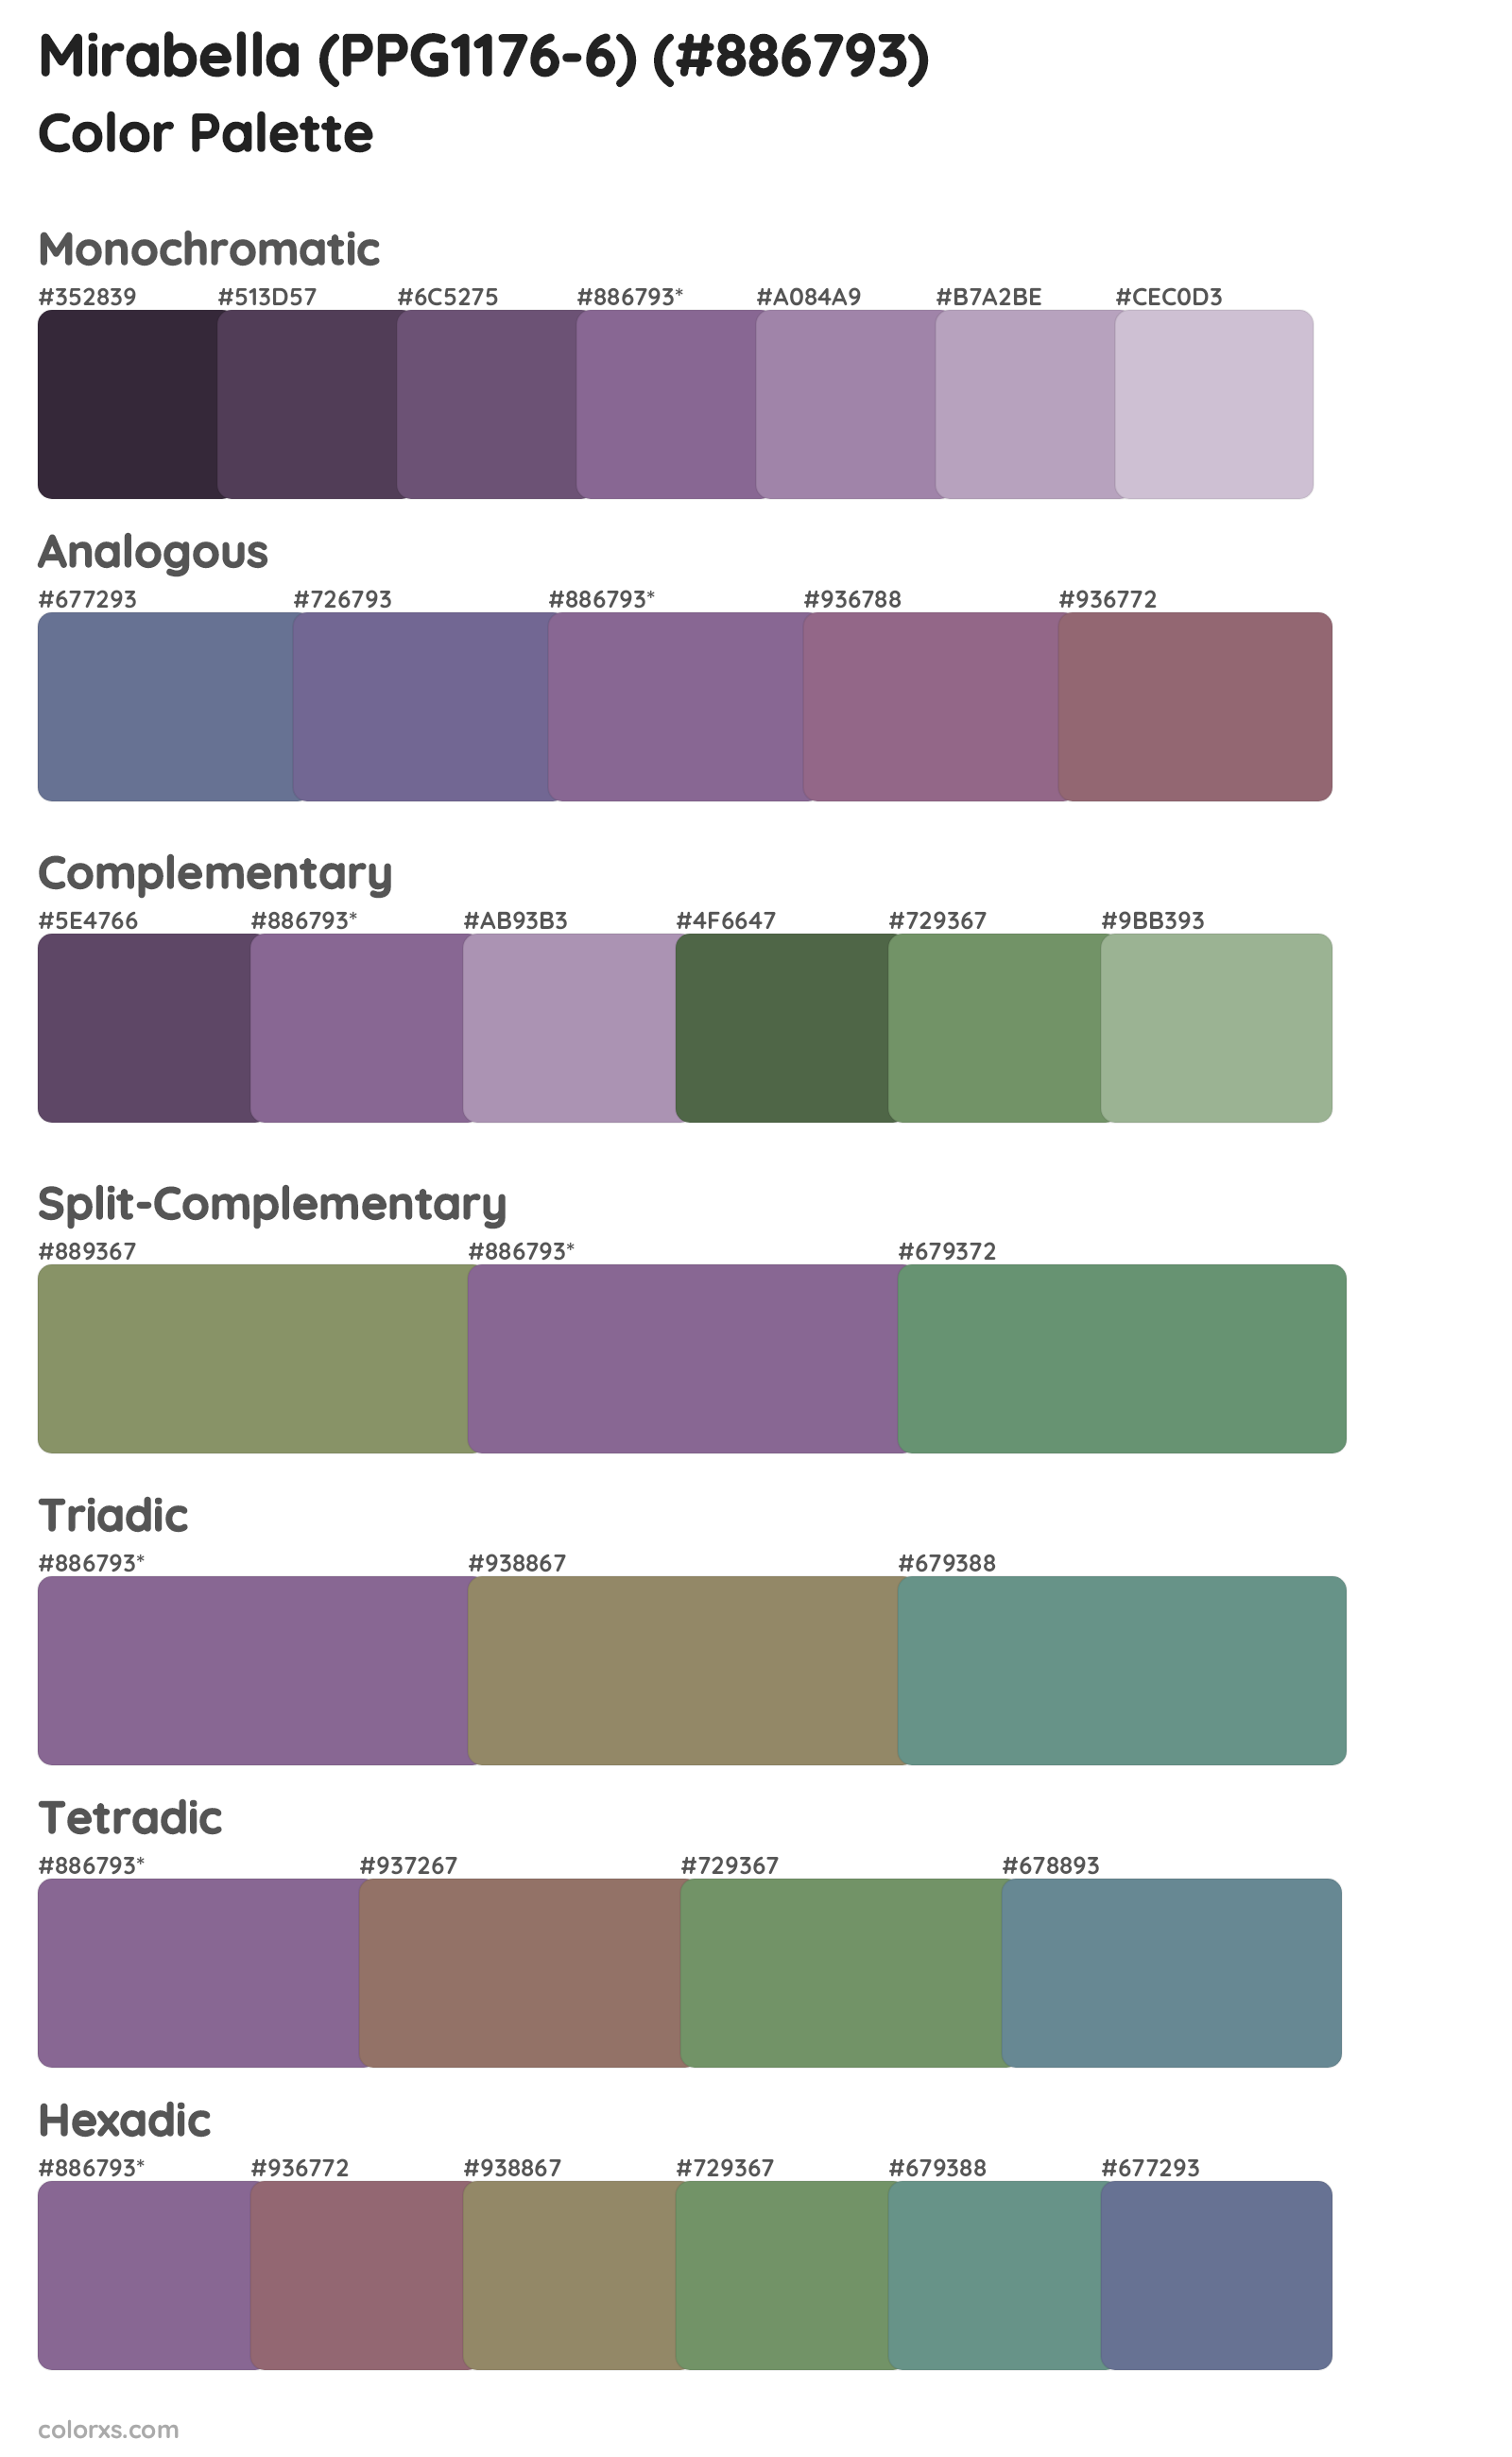 Mirabella (PPG1176-6) Color Scheme Palettes